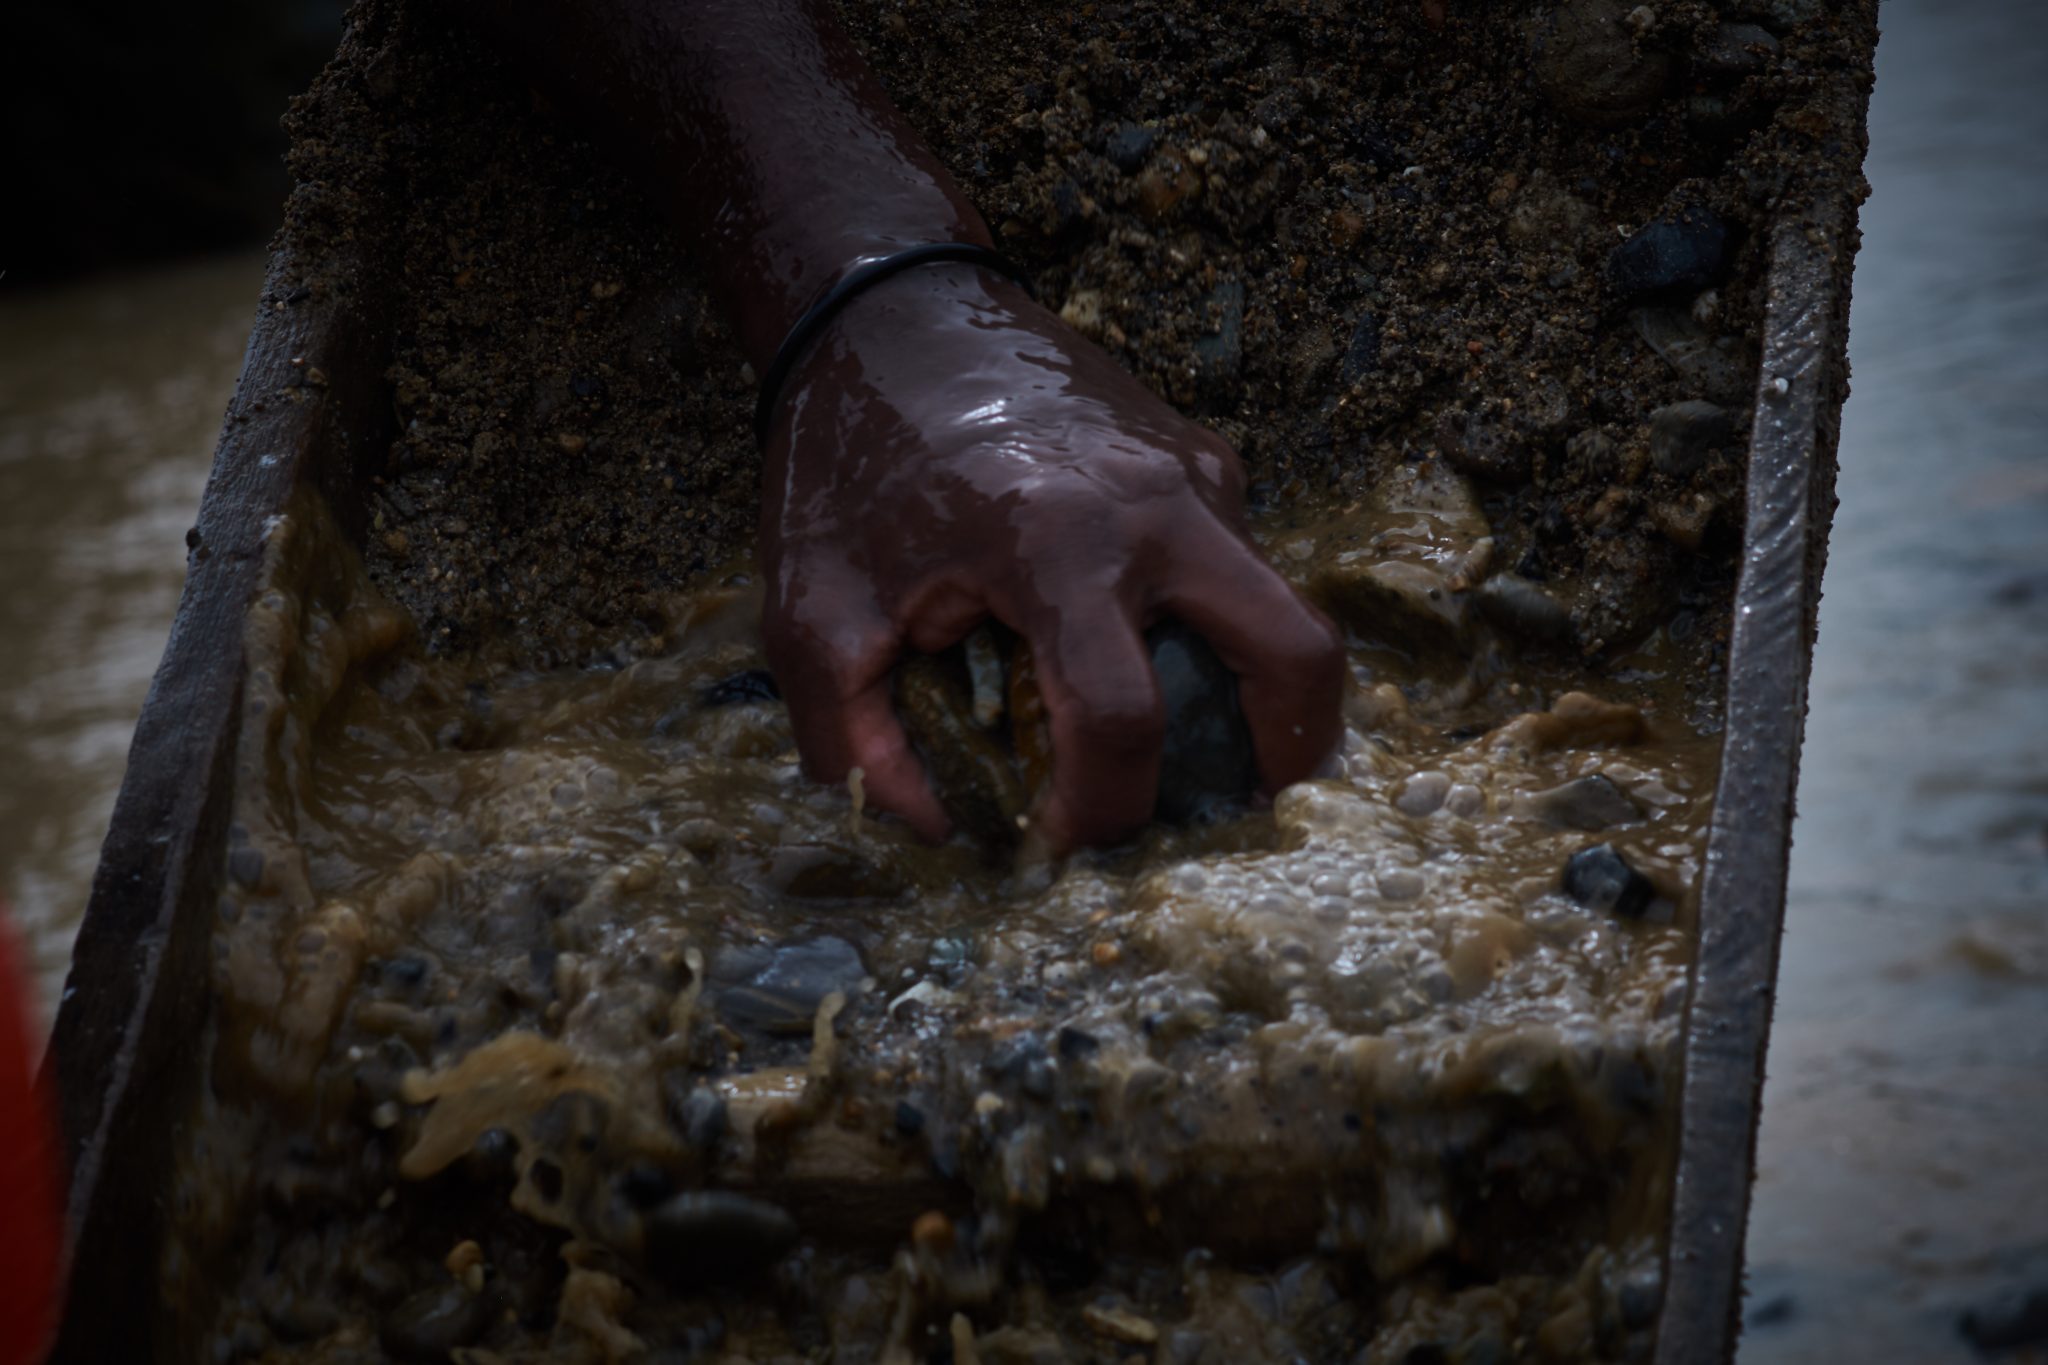 La minería artesanal para extraer oro está protegida por la ley al ser una actividad ancestral de las comunidades de los ríos Quito y Baudó. Río Quito, Chocó. Noviembre, 2020. | Crédito: Gerald Bermúdez.